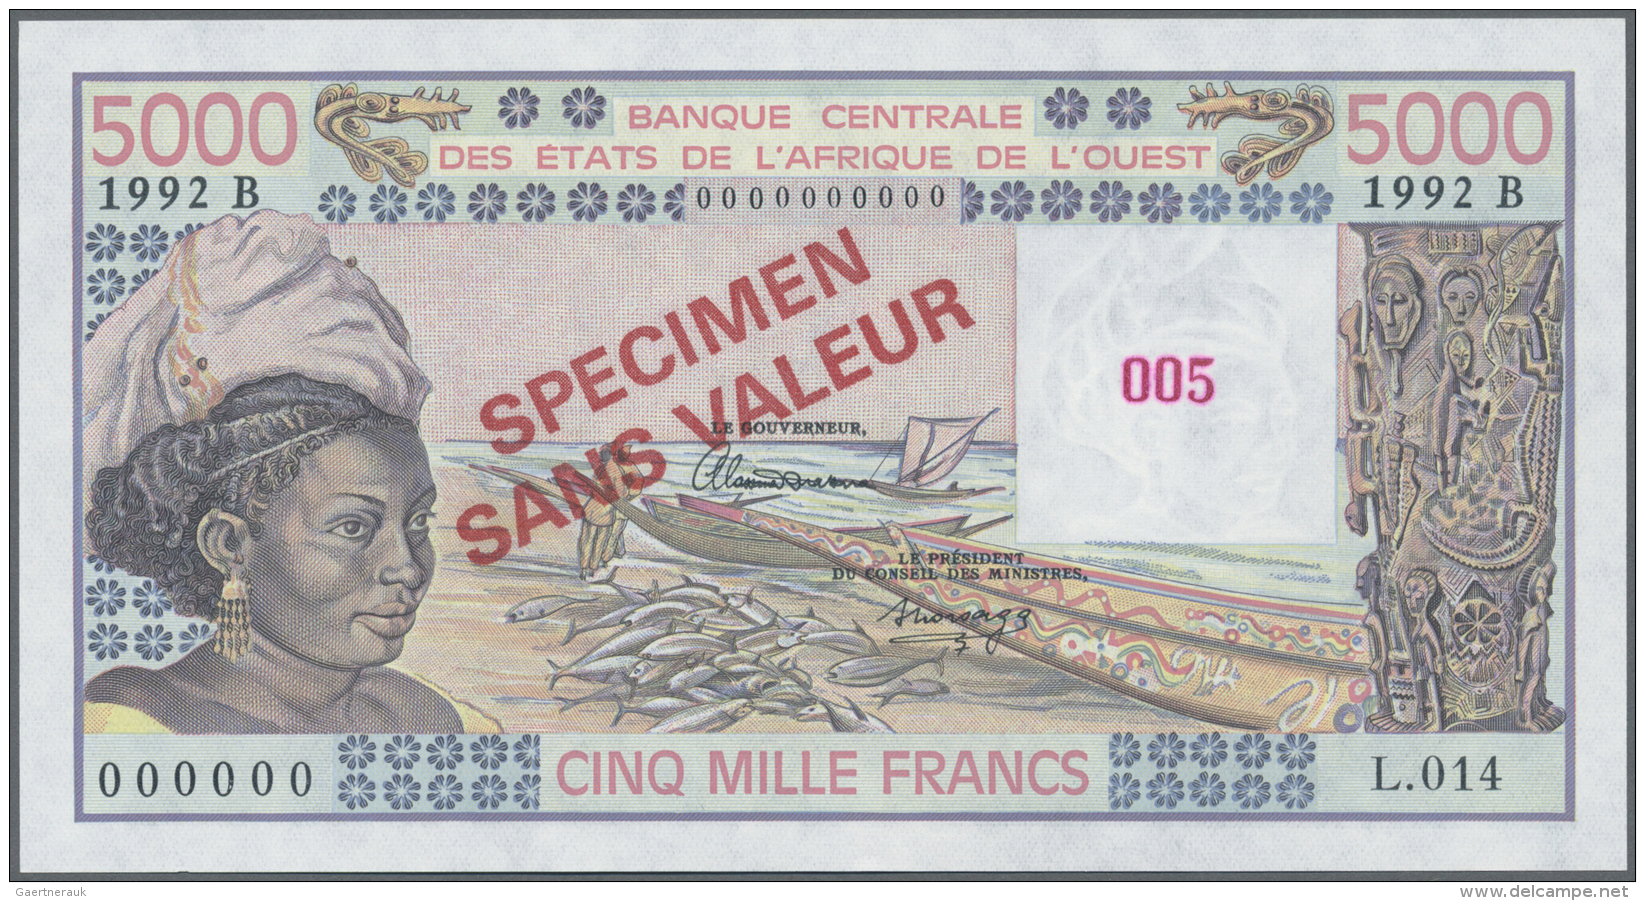 Benin: 5000 Francs 1992 Specimen P. 208Bs (W.A.S.) In Condition: UNC. - Bénin